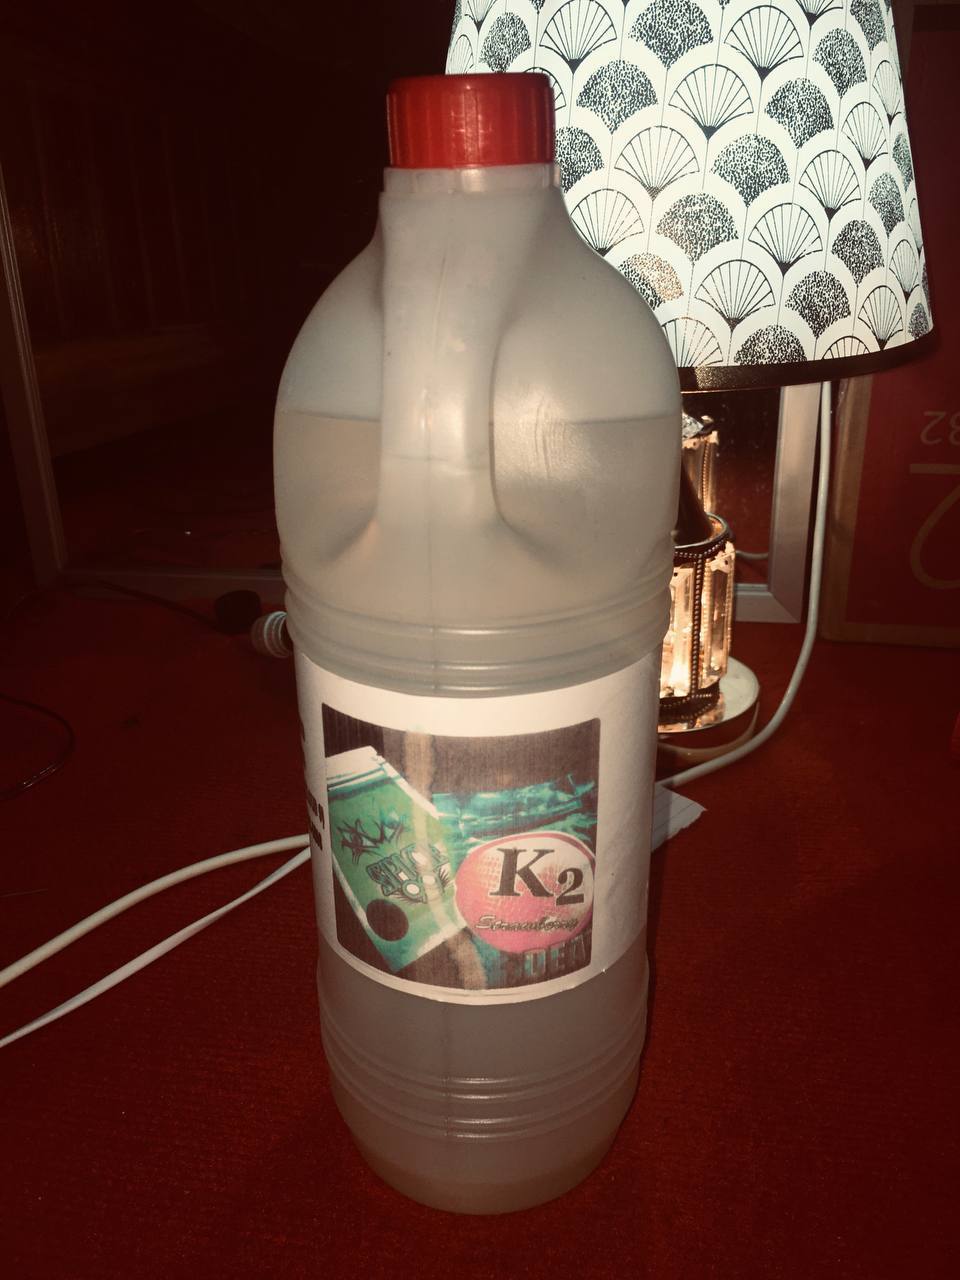 Liquid K2